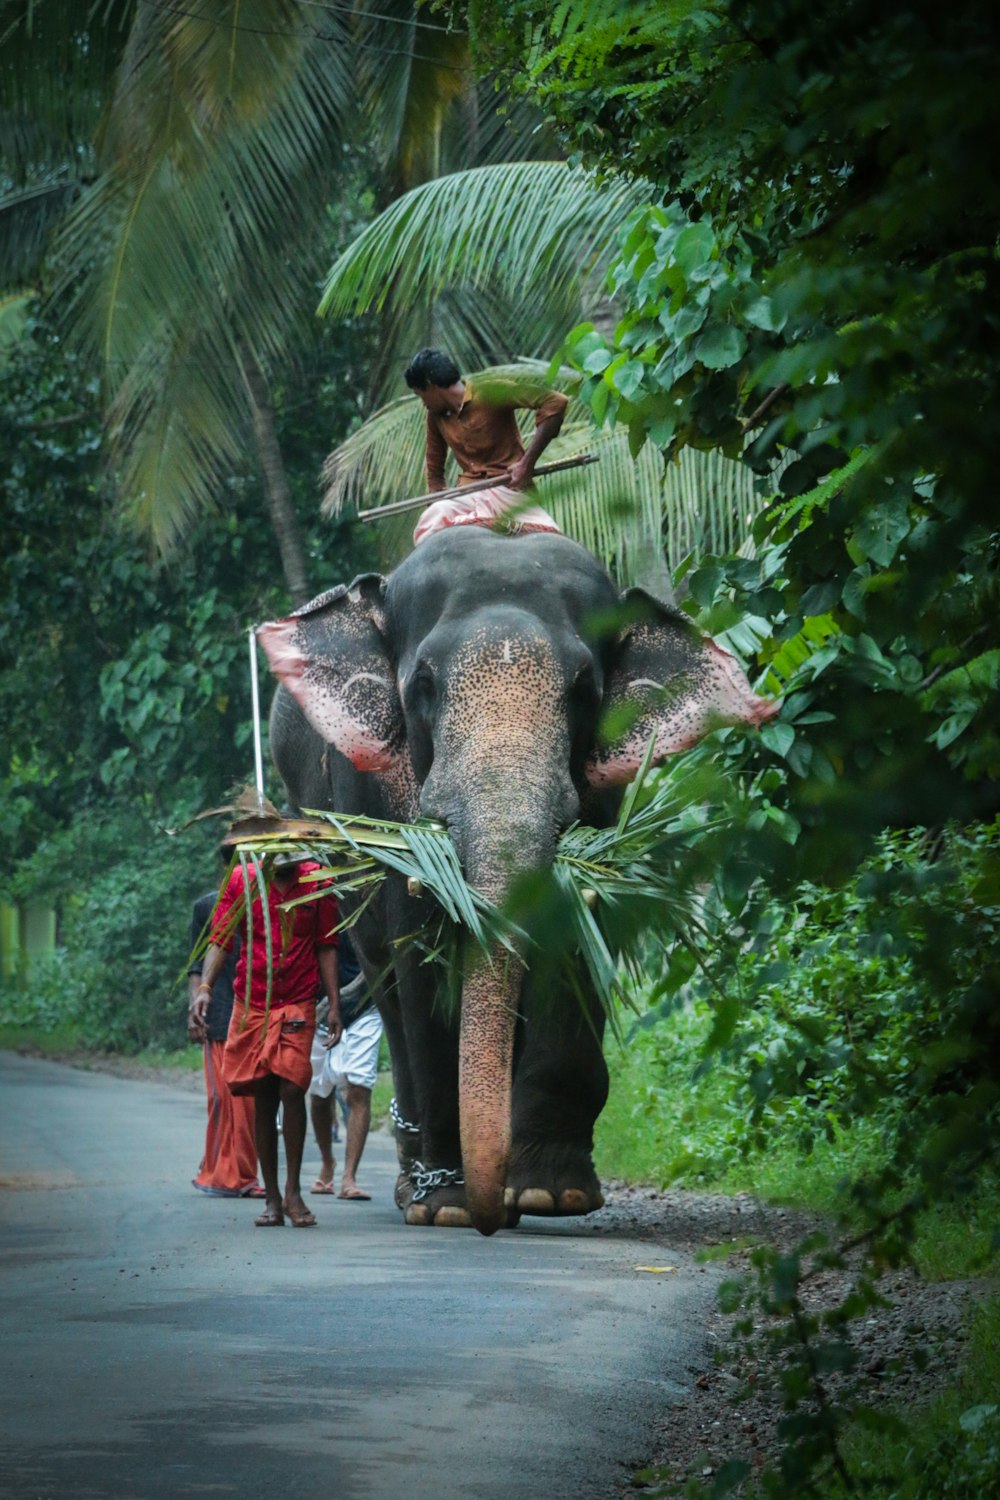 Mann reitet Elefant auf der Straße